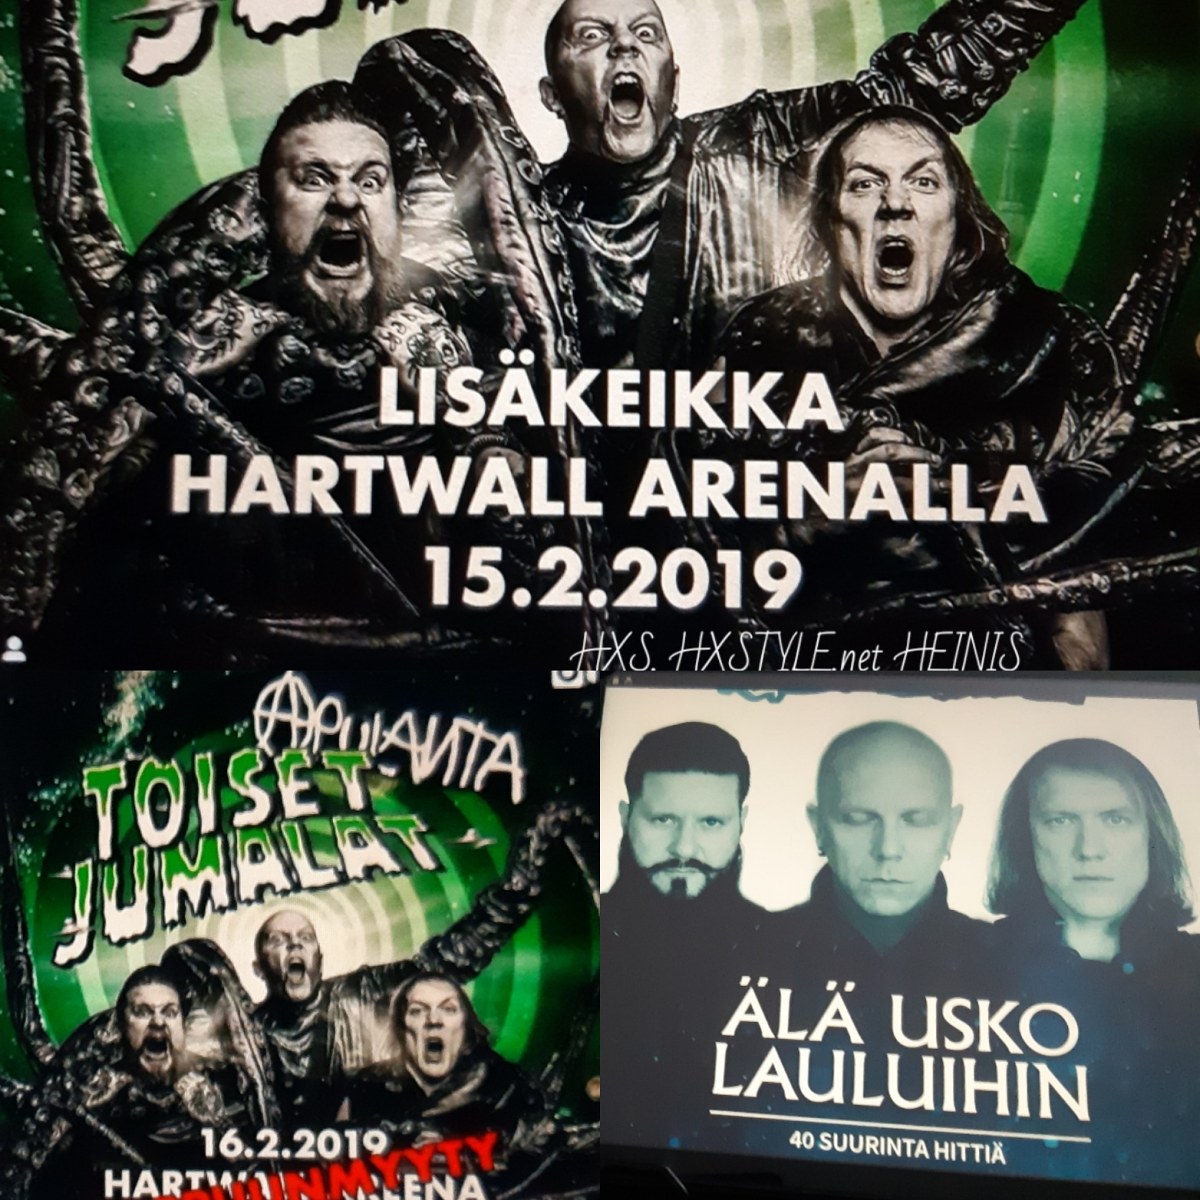 KULTTUURI. Kotimainen, SUOMI. MUSIIKKI: Albumit, Singlet, videot, Live Keikka&Konsertit. Elokuva, Kirjat……. APULANTA v. 1991 – . Punk, Rock yhtye…… HARTWAL AREENA 15. – 16.2.2019, TV1 Puoli7 Vieraana, Kotisivut, Musiikkivideot…12.2.2019 Suosikki& Elämäntapablogi HXS. HXSTYLE.net HEINIS.